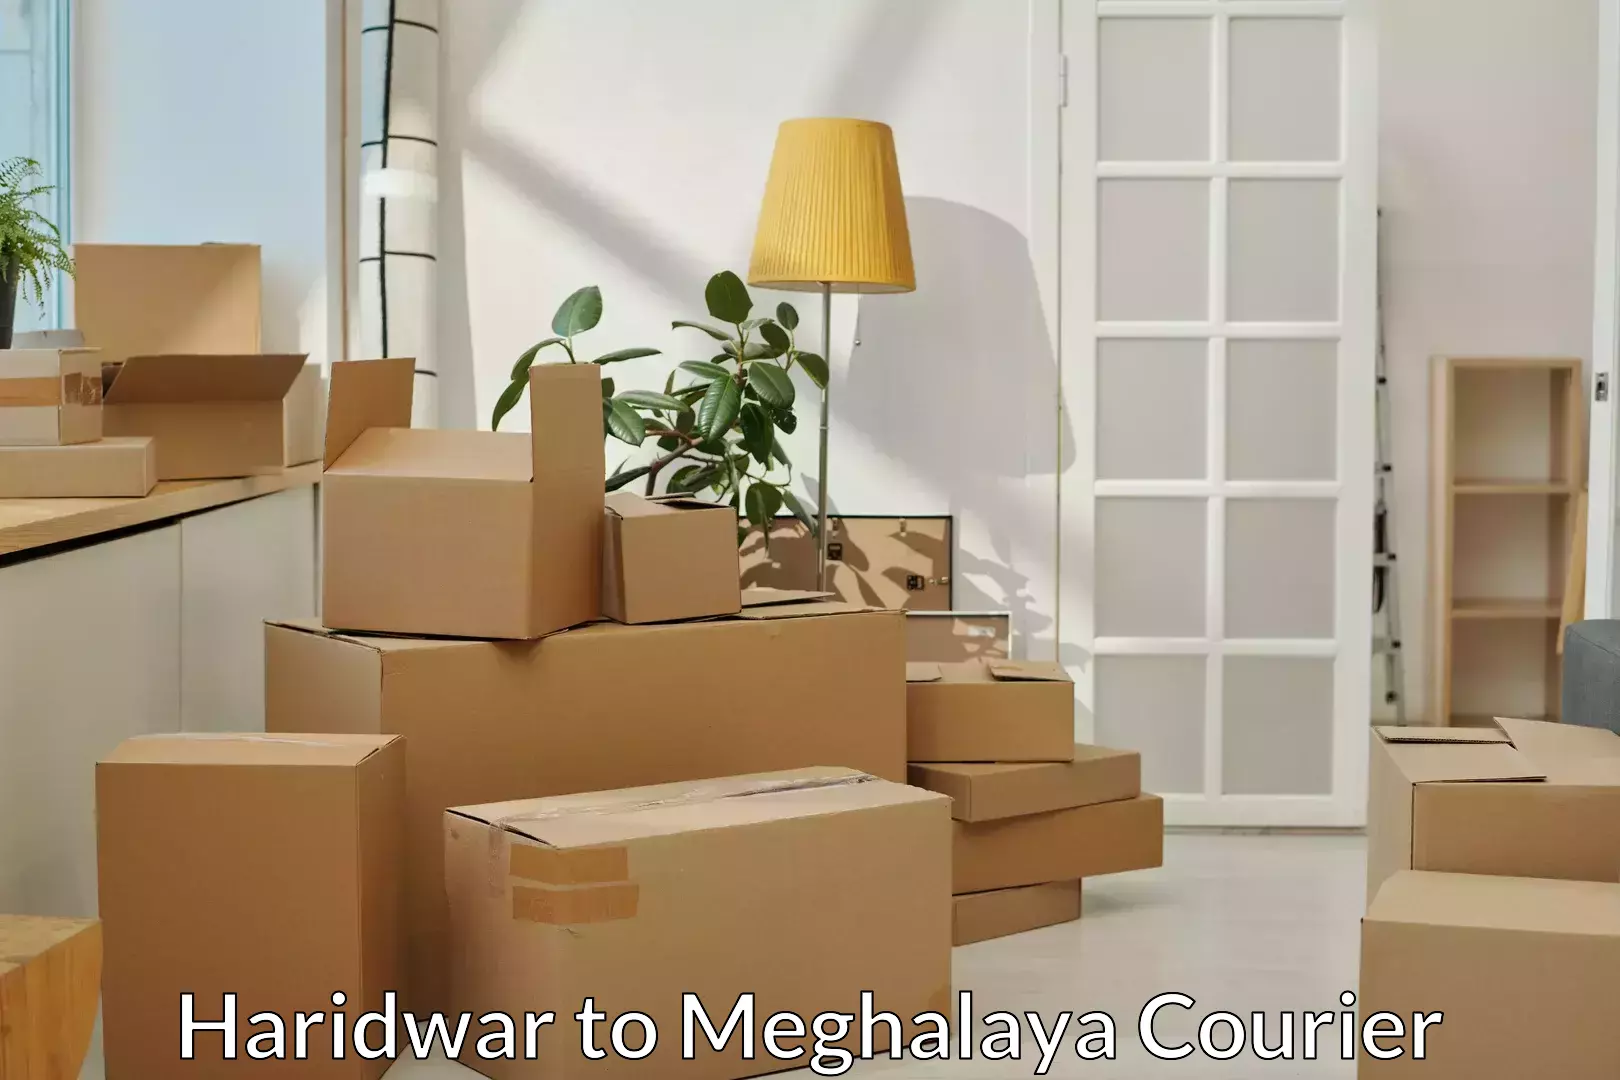 Stress-free moving Haridwar to Meghalaya